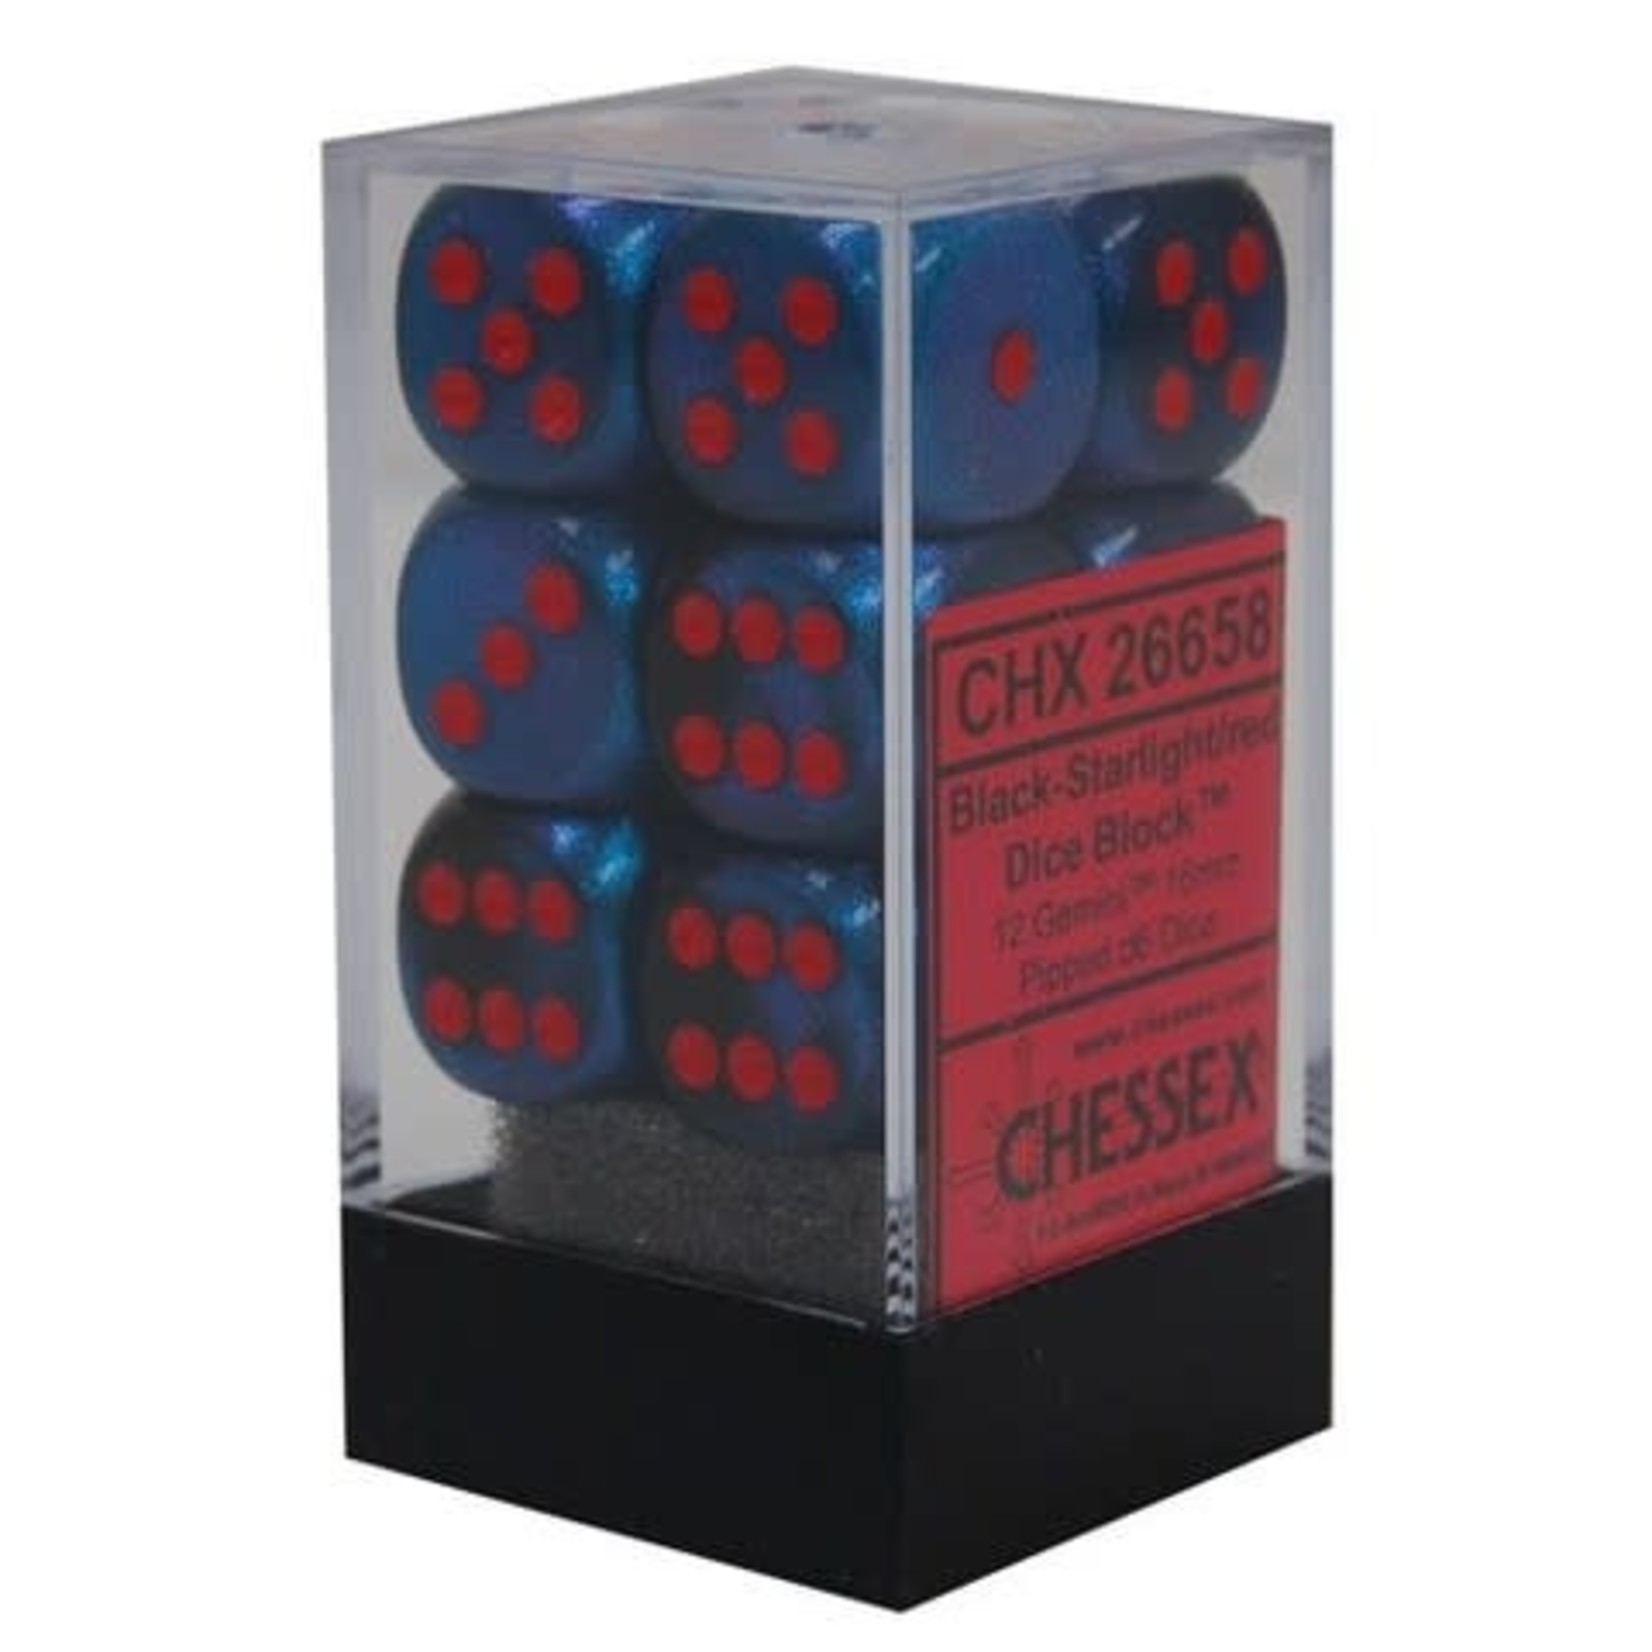 Chessex Gemini Black Starlight w/red 16mm d6 dice (12)